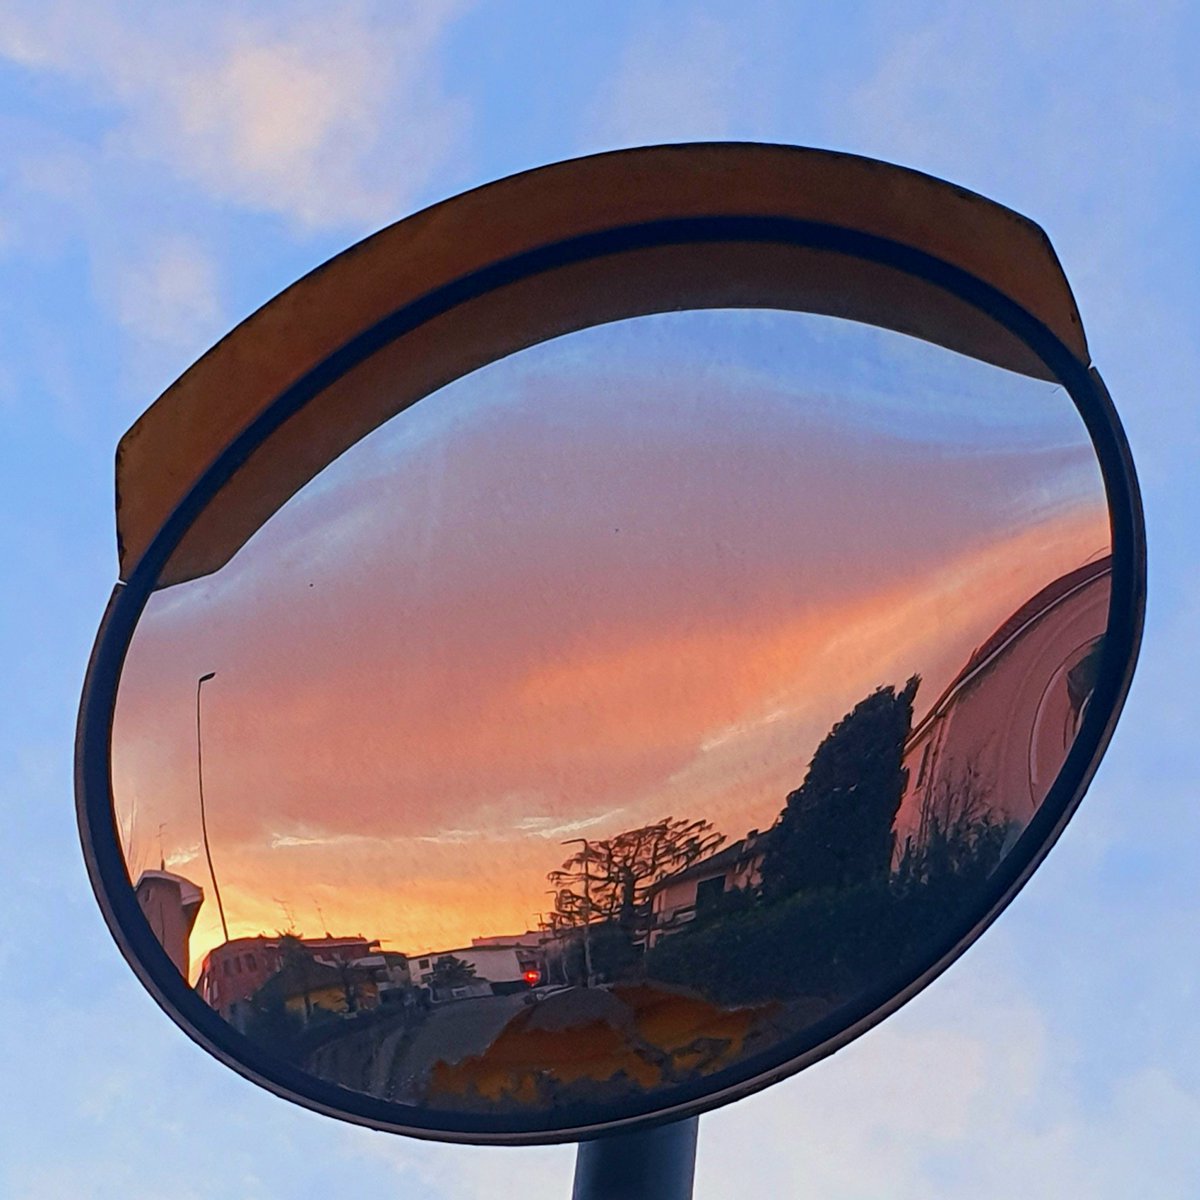 Lo sguardo spento si accende all'improvviso i colori del tramonto illuminano il viso #CasaLettori @CasaLettori #scritturebrevi #istantaneeDa Bollate, Milano #inLombardia #ThePhotoHour #StormHour